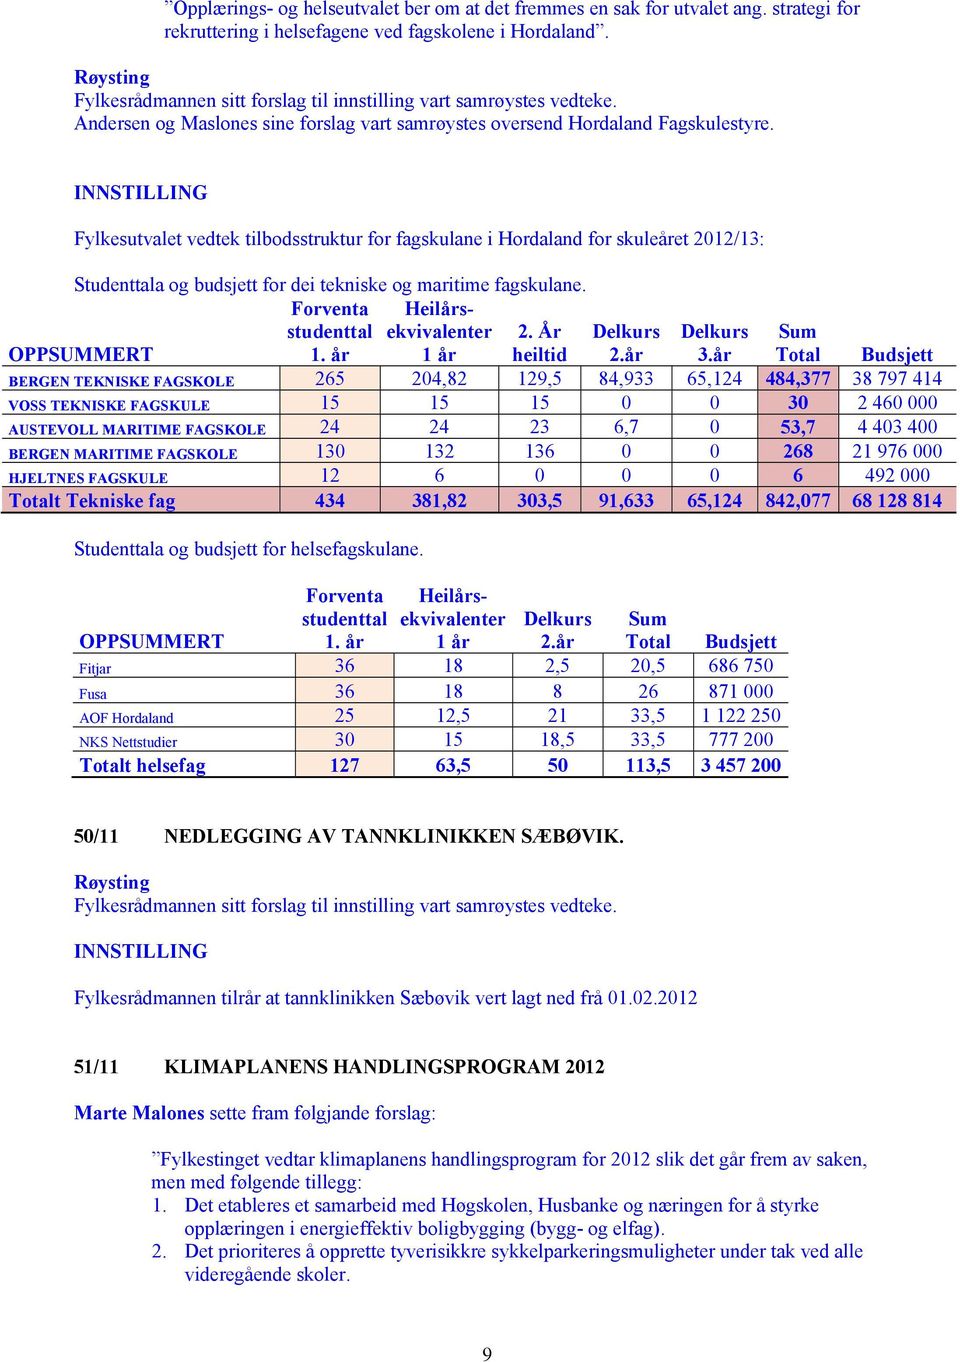 Fylkesutvalet vedtek tilbodsstruktur for fagskulane i Hordaland for skuleåret 2012/13: Studenttala og budsjett for helsefagskulane. Forventa studenttal 1.